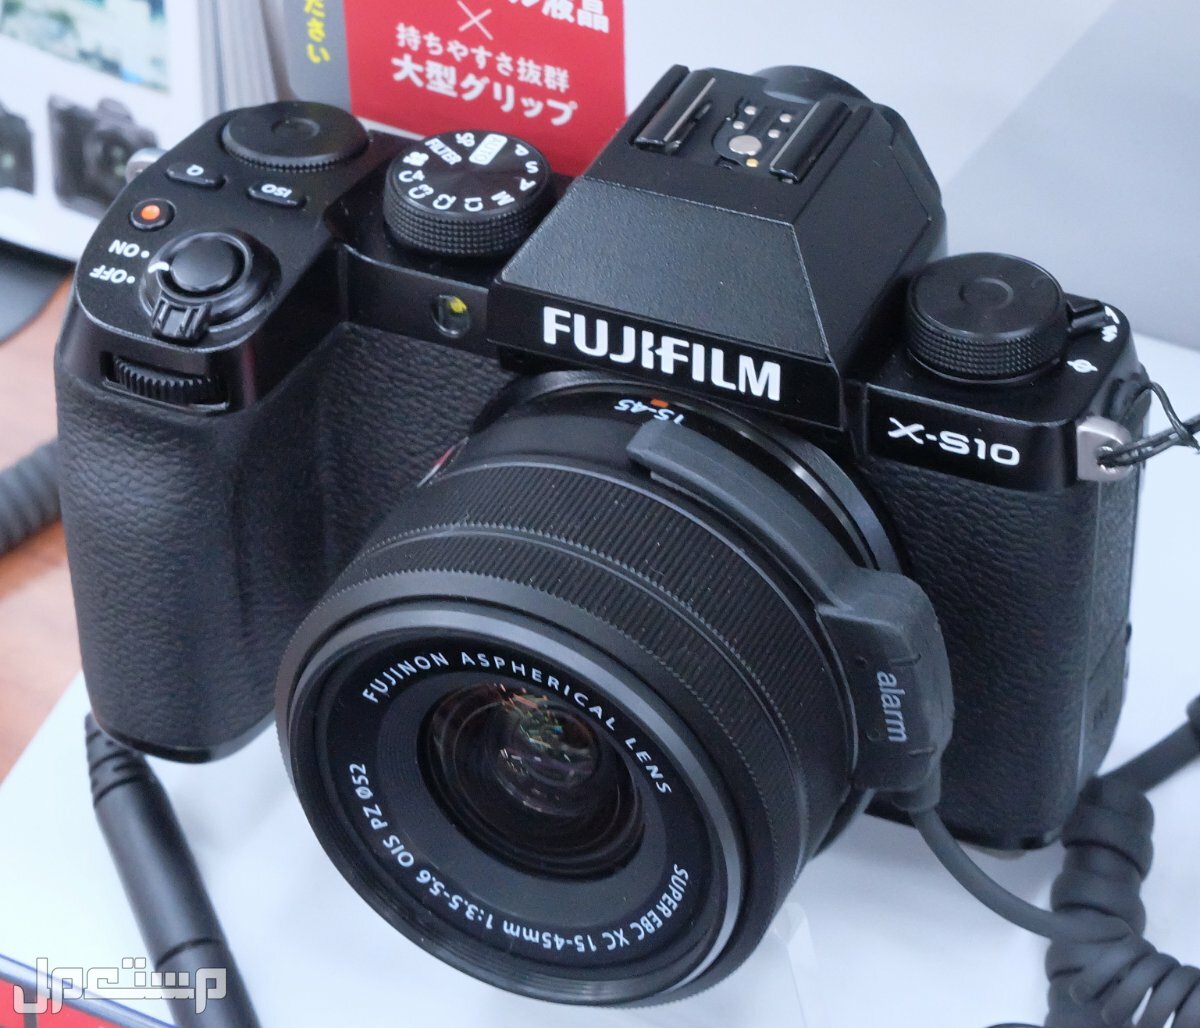 مواصفات ومميزات وعيوب كاميرات التصوير فوجي فيلم في جيبوتي مواصفات كاميرا Fujifilm X-S10